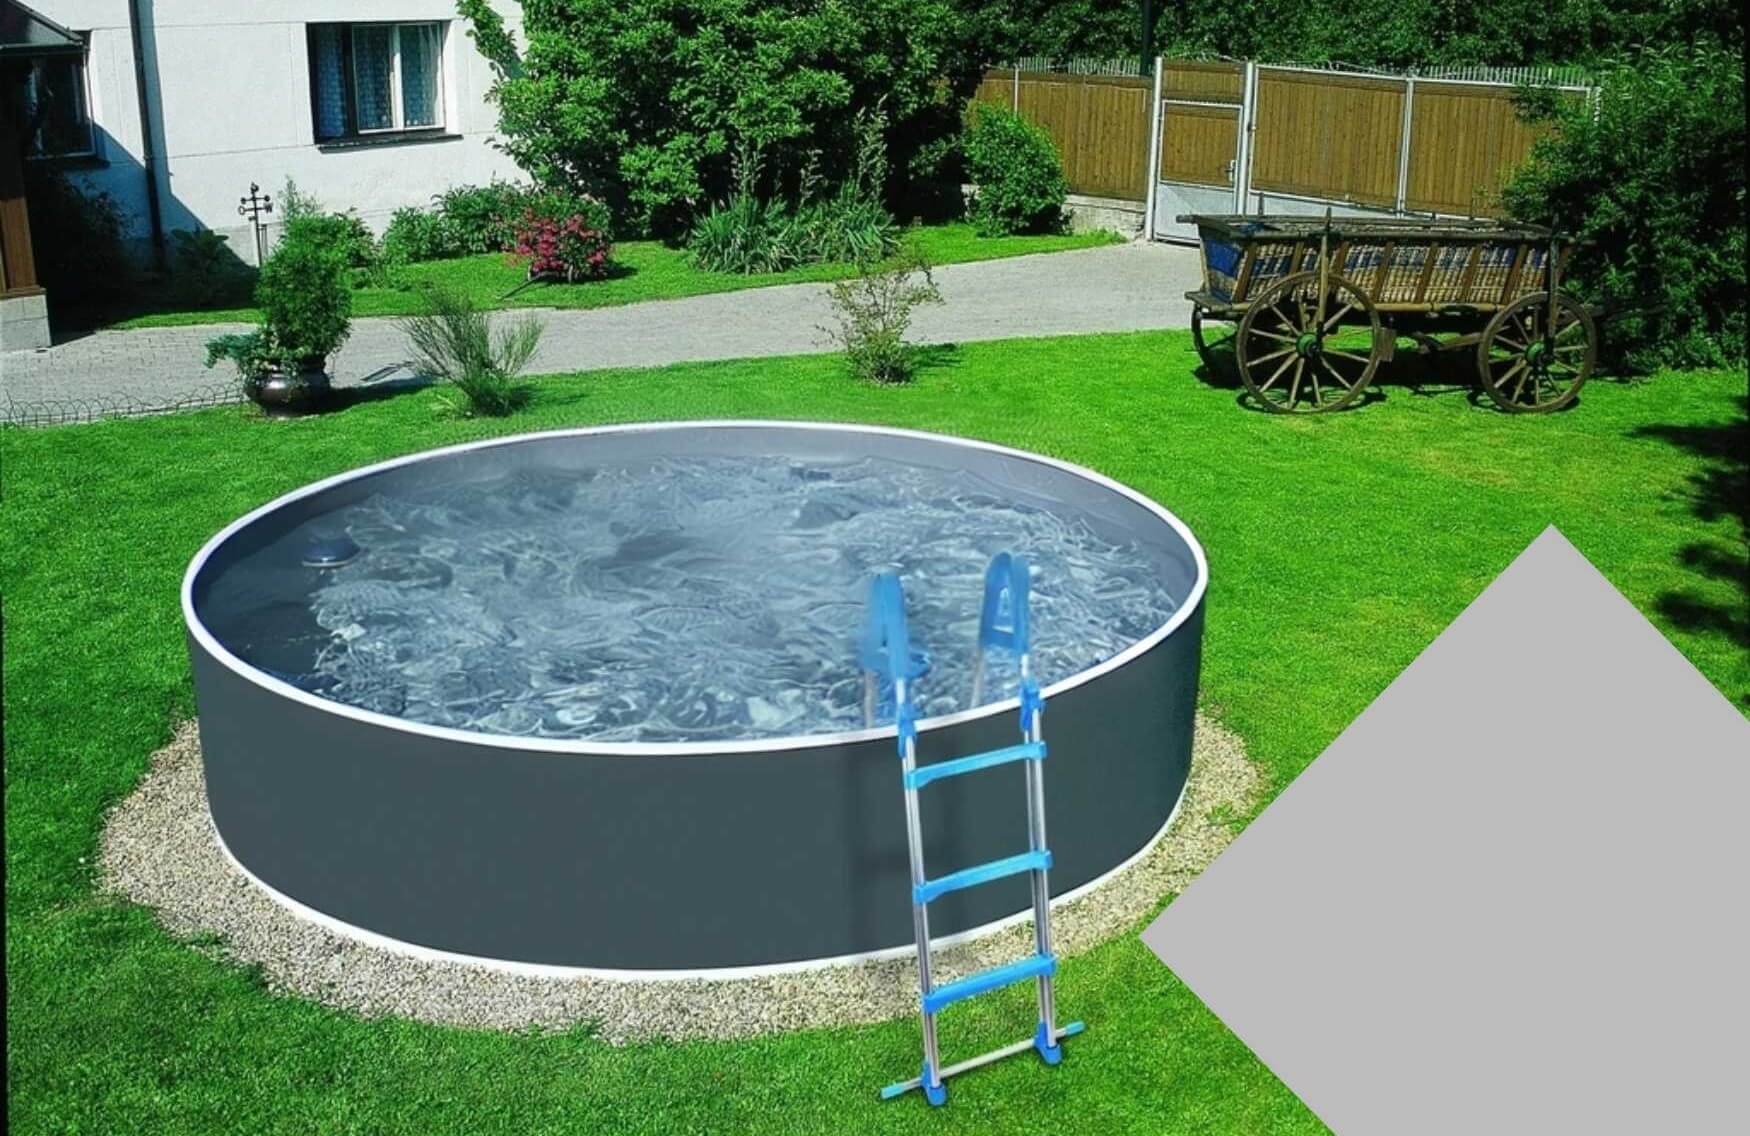 E-shop Planet Pool 30935 Náhradná bazénová fólia Grey pre bazén priemer 3,6 x 0,92 m - šedá barva